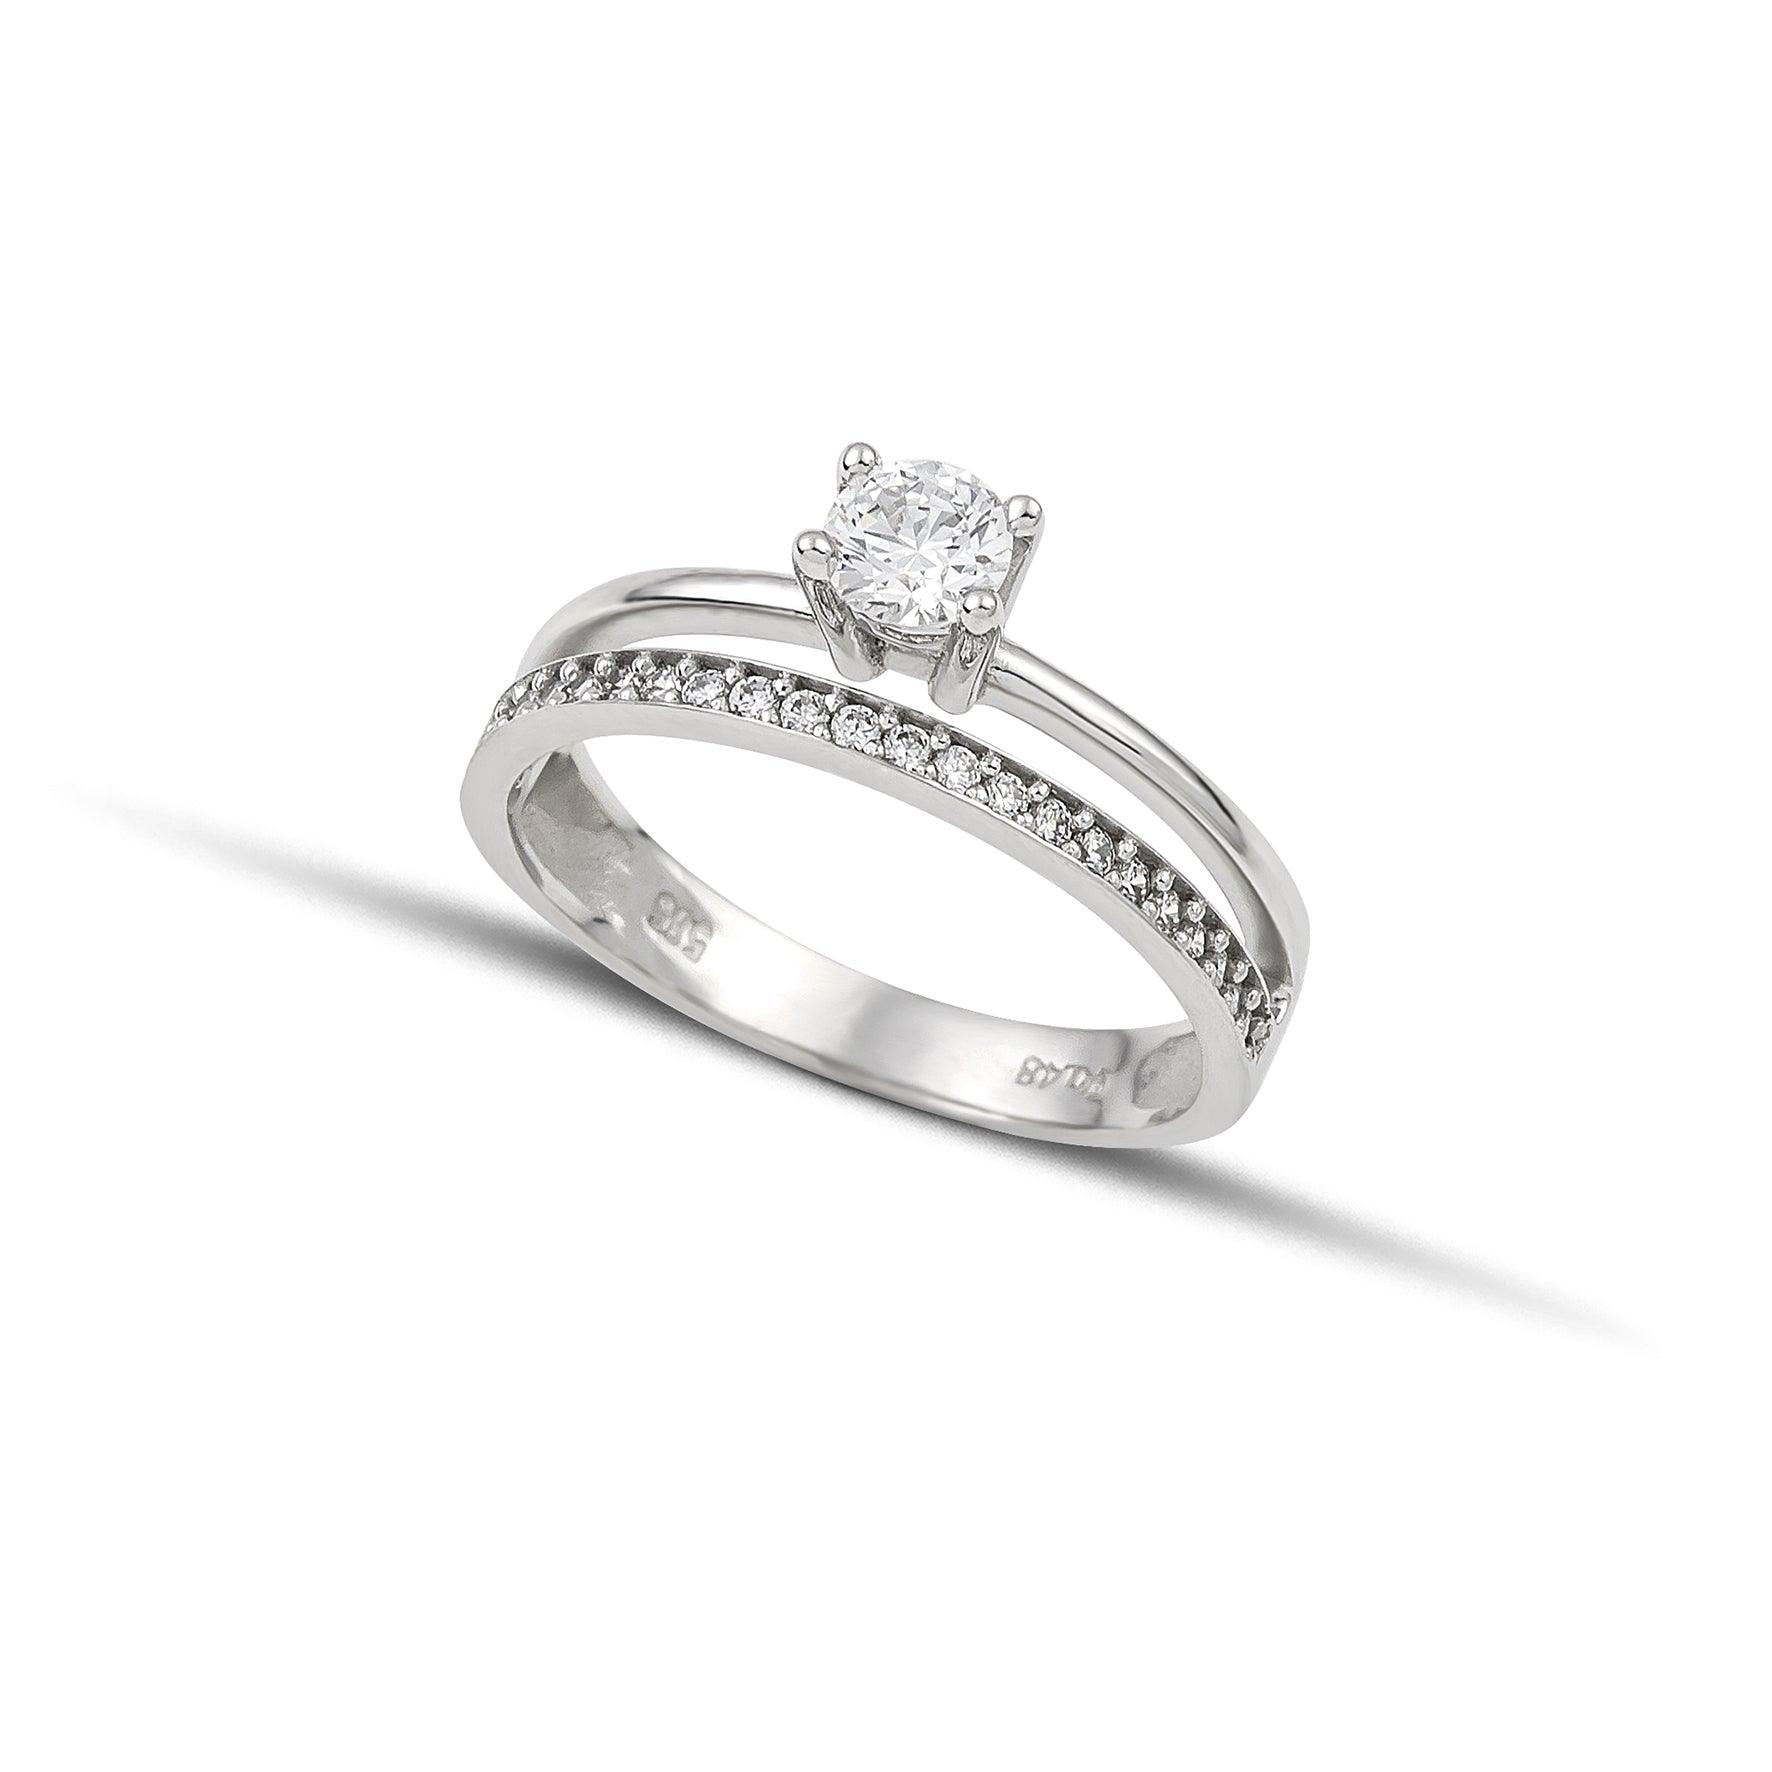 Μονόπετρο δαχτυλίδι γάμου με διαμάντι, που συνδυάζει ένα δαχτυλίδι σειρέ με διαμάντια δίνοντας την αίσθηση διπλού δαχτυλιδιού, κατασκευασμένο από λευκόχρυσο.